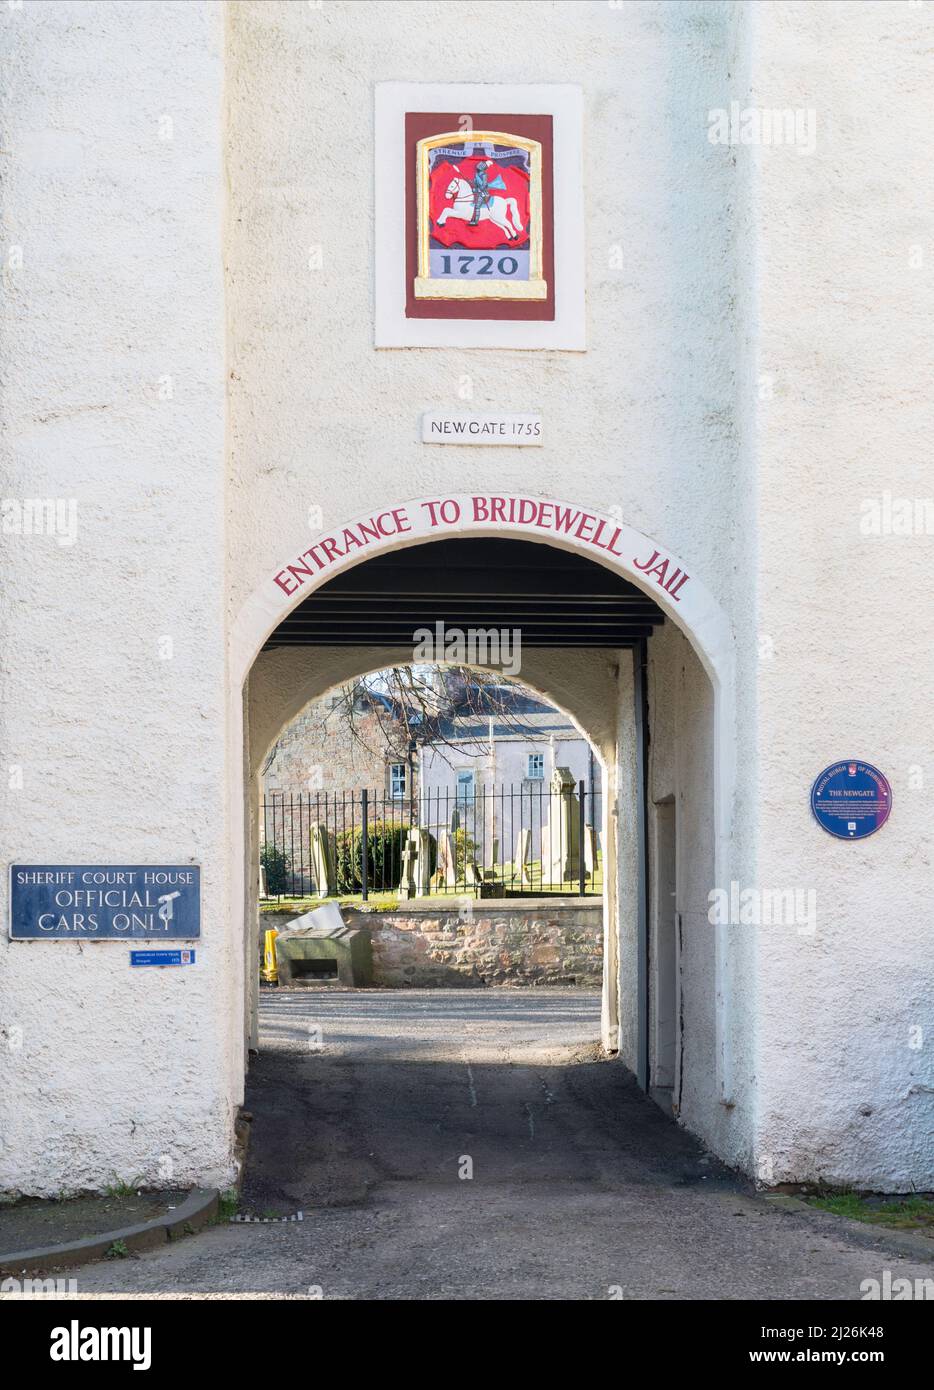 Newgate, der Eingang zum Bridewell Gefängnis und dem Sheriff Court House in Jedburgh, Scottish Borders, Schottland, Großbritannien Stockfoto